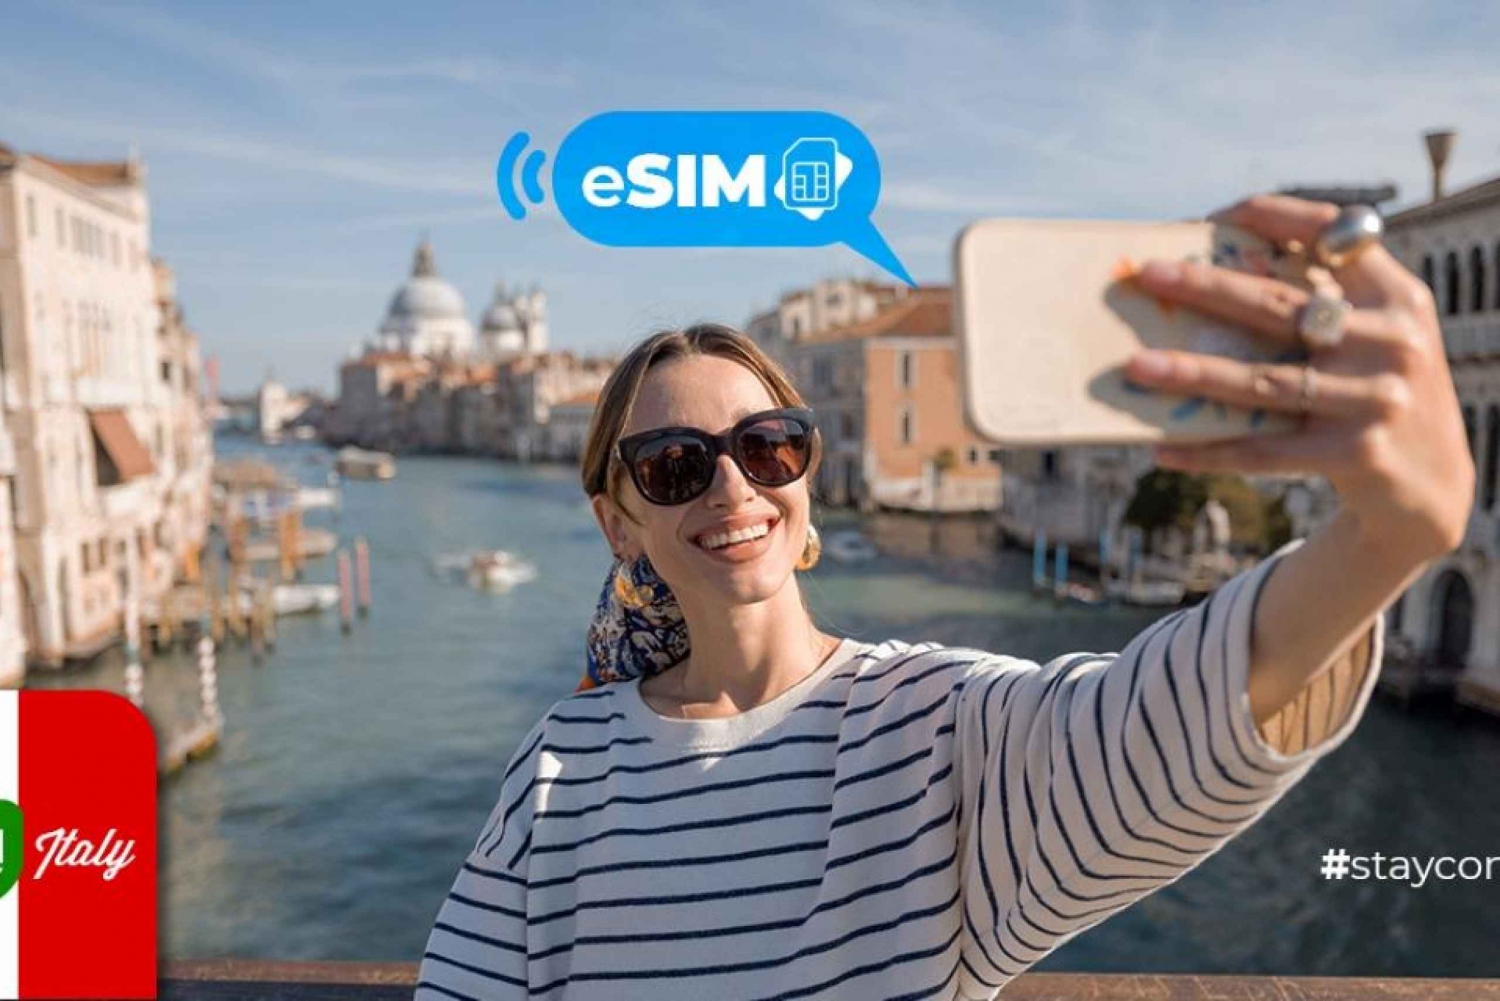 Portofino&Italy: Unlimited EU Internet with eSIM Mobile Data